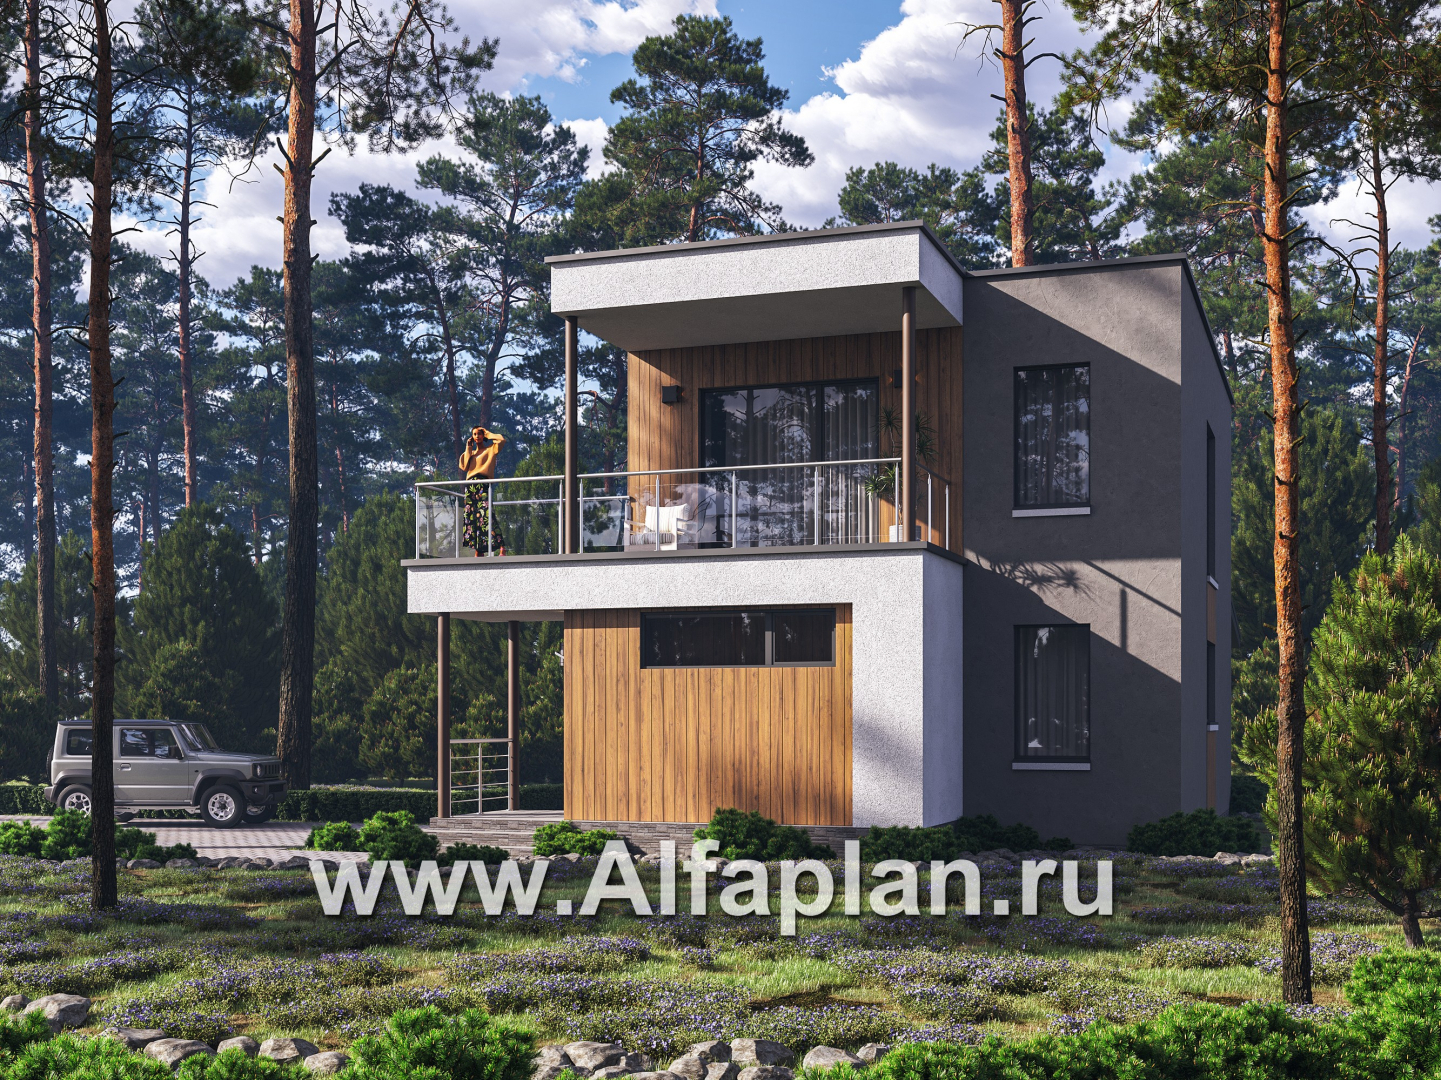 Проекты домов Альфаплан - "Викинг" - проект дома, 2 этажа, с сауной и с террасой, в стиле хай-тек - основное изображение